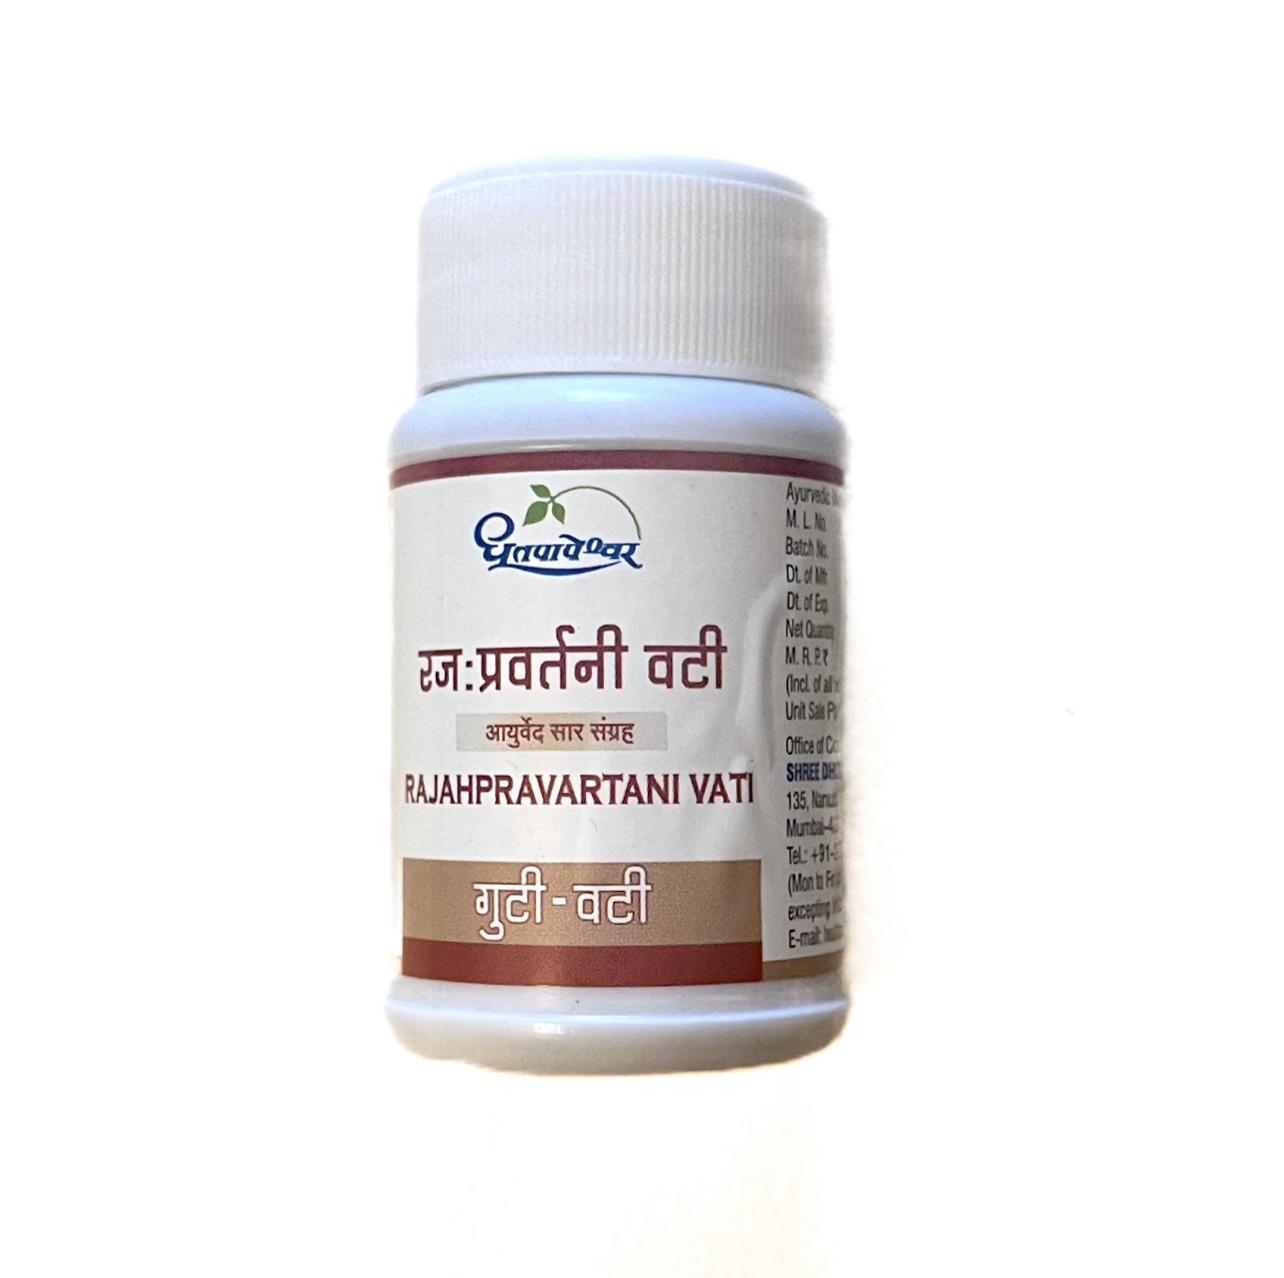 RAJAHPRAVARTANI VATI, Dhootapapeshwar (РАДЖАПРАВАРТАНИ ВАТИ, для лечения женской репродуктивной системы, Дхутапапешвар), 60 таб.